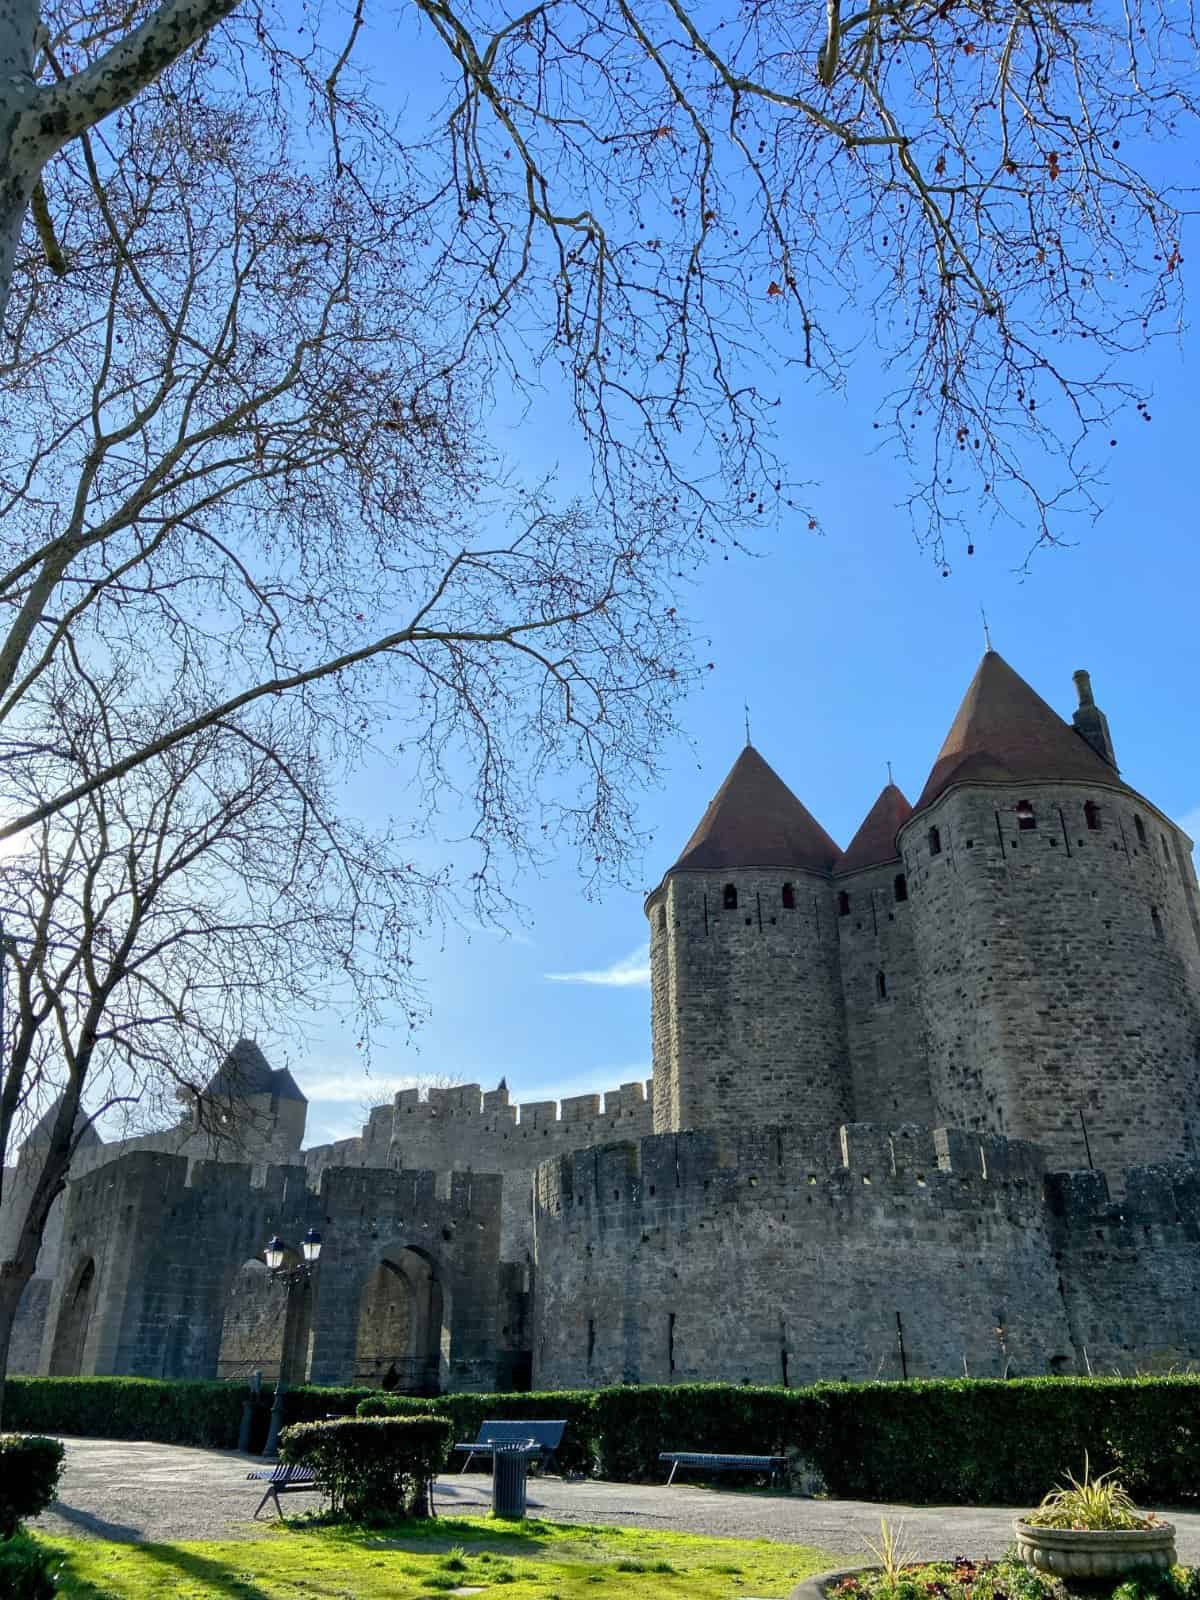 Exterior walls and castles of La Cité de Carcassonne